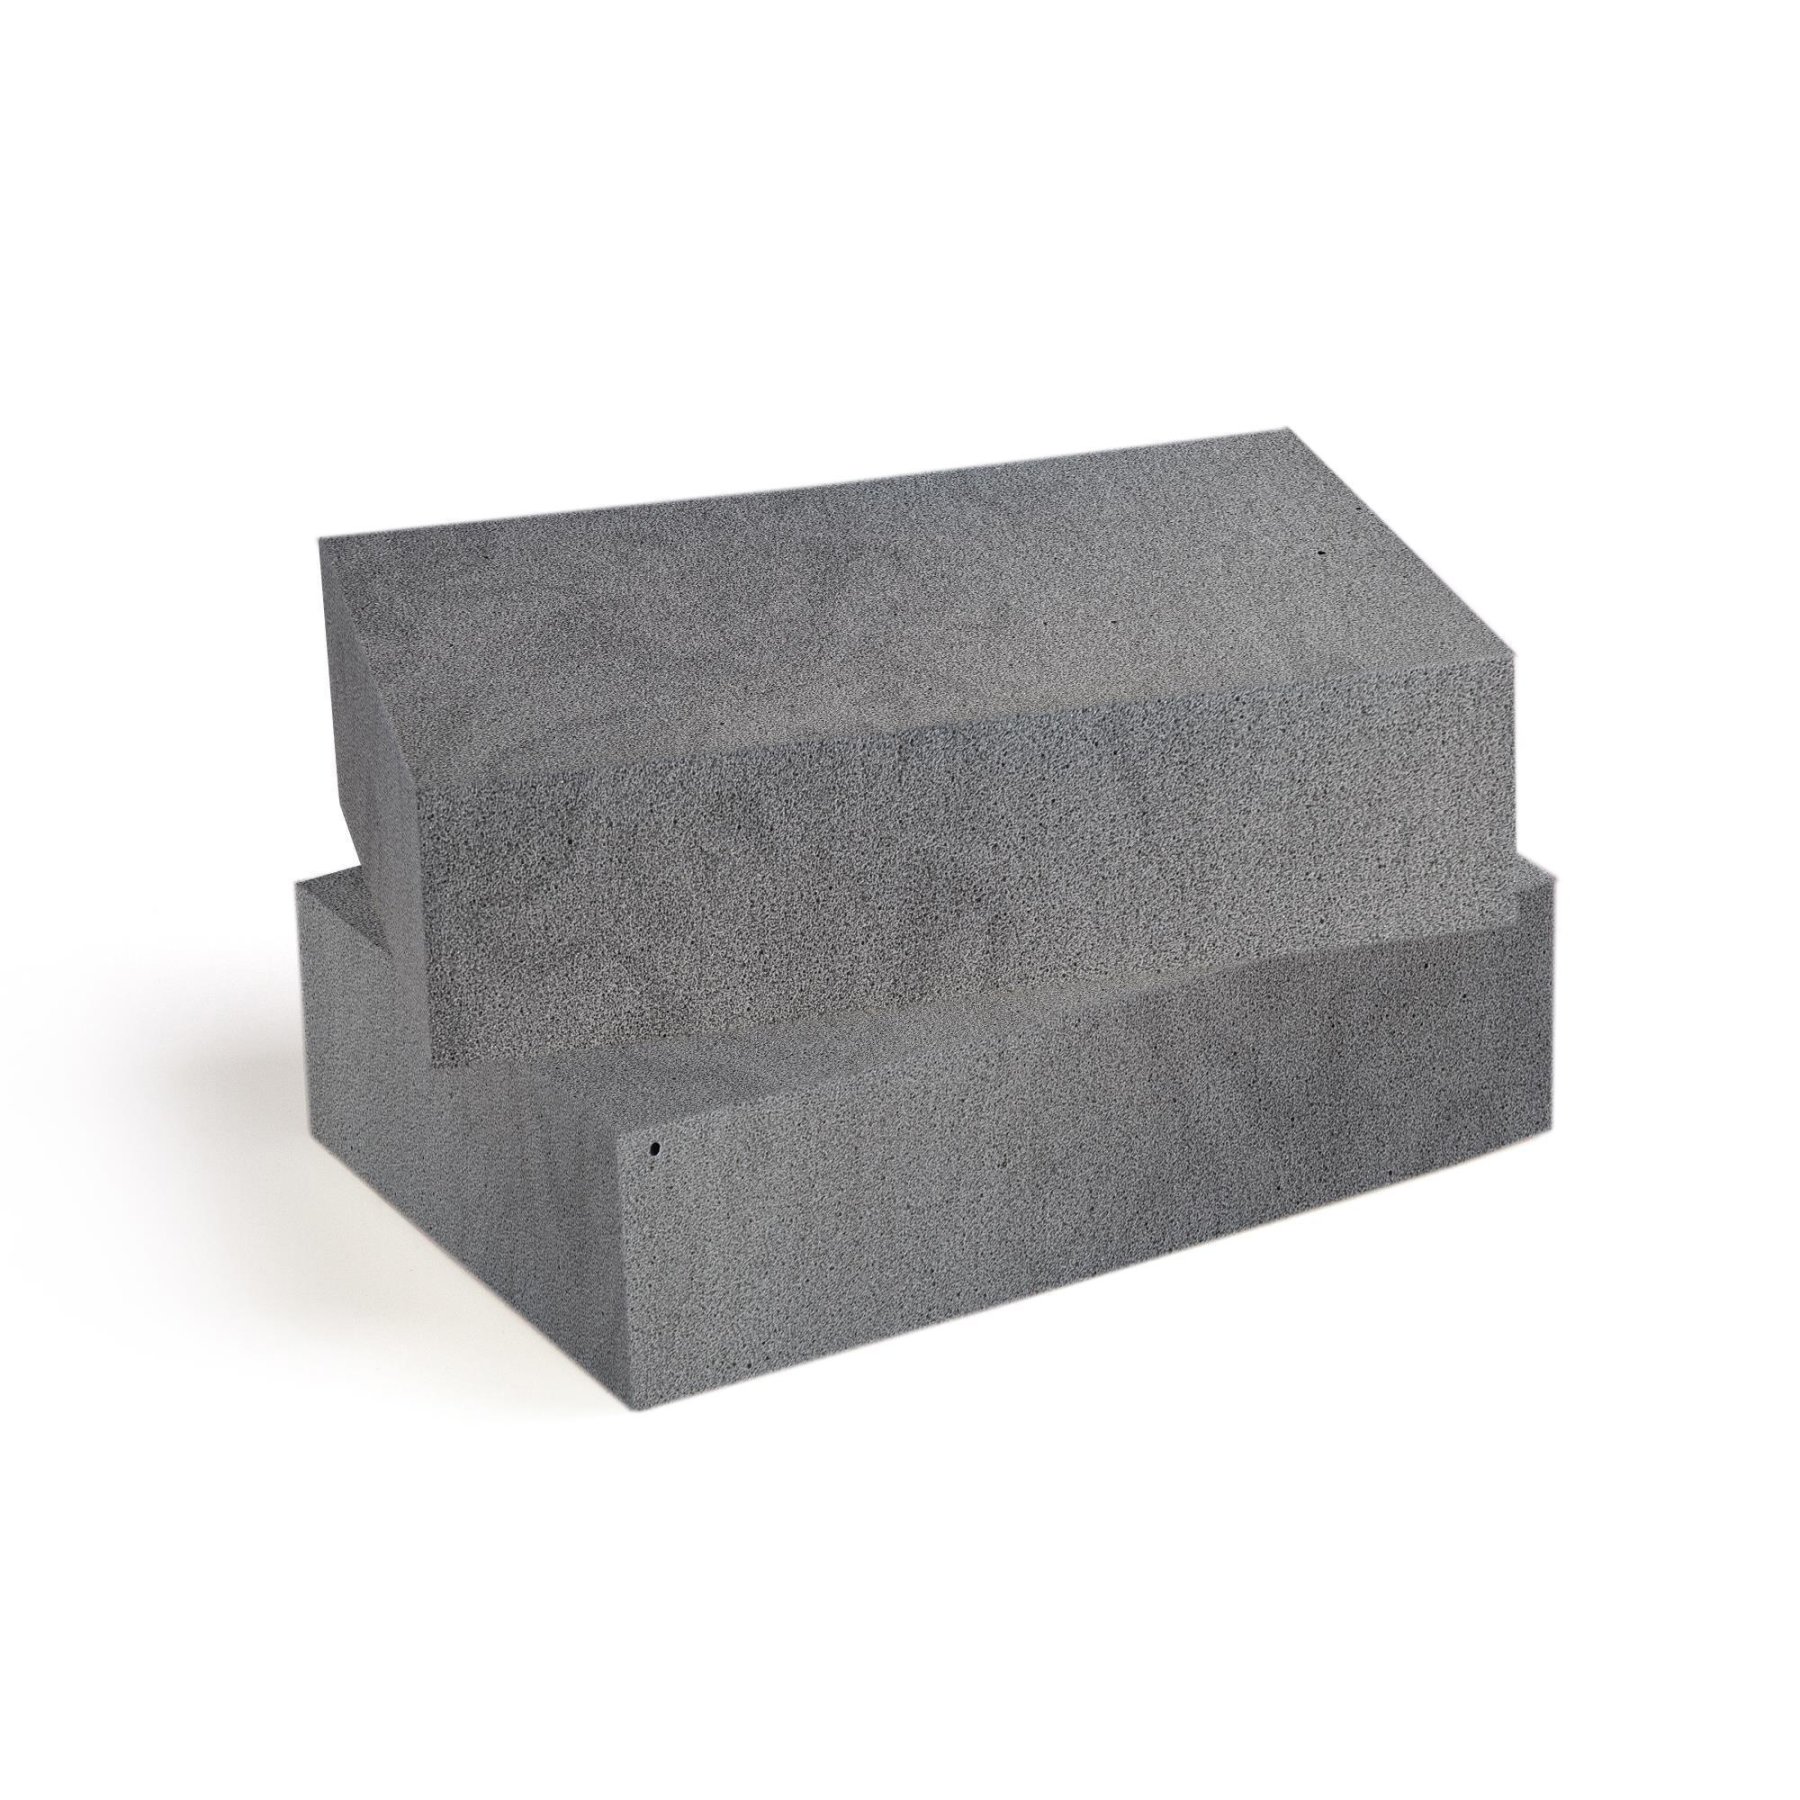 Schaumstoff Platte Grau 200cm x 100cm x 3cm RG 35/50 fest  Polsterstoffe &  Möbelstoffe - Ihr Fachhandel für Polstermaterial